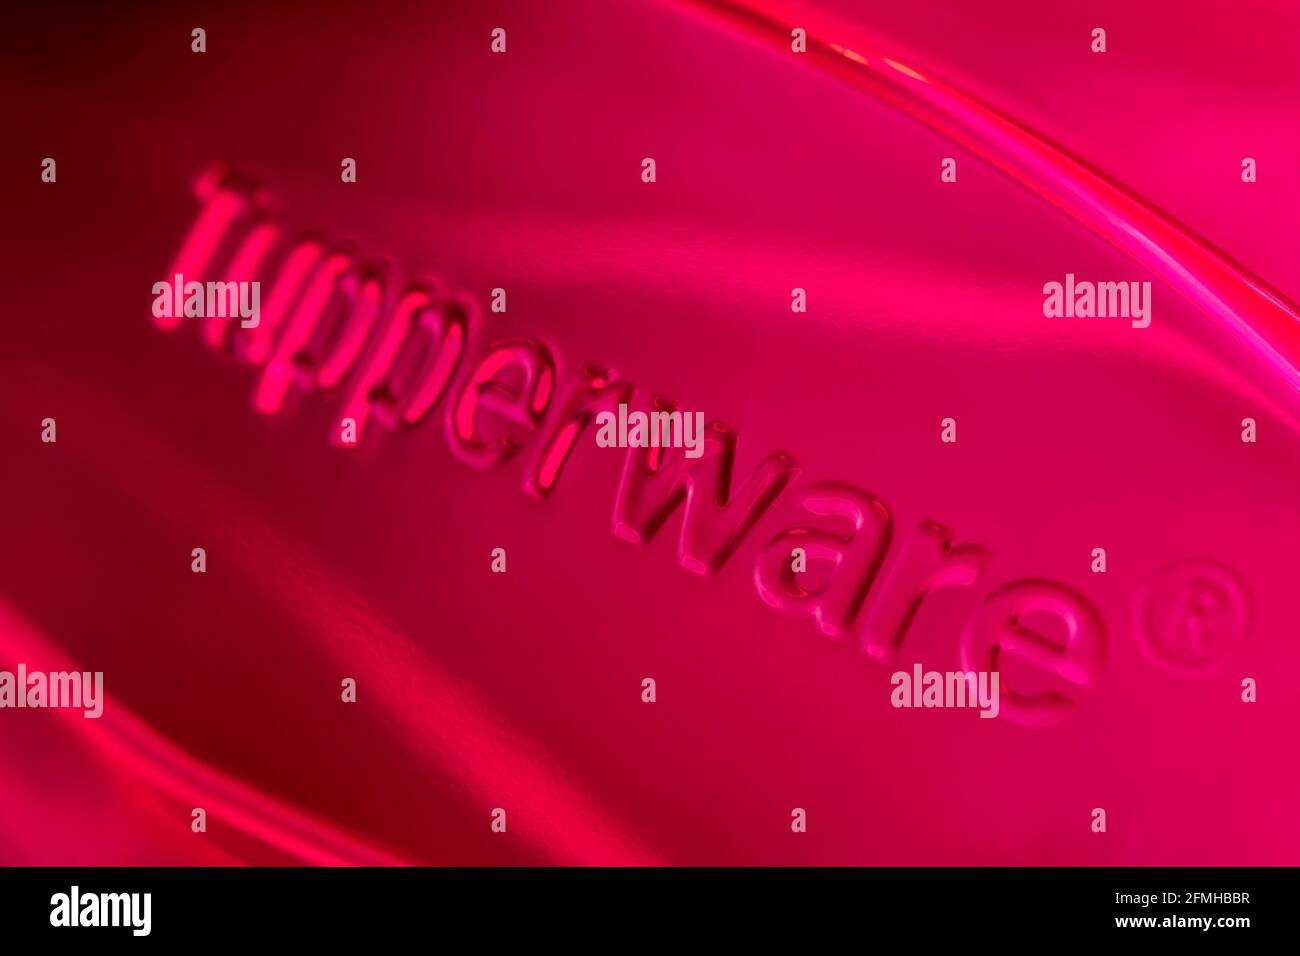 Un primer plano del logotipo de Tuppwerware tal como se ve en el lateral de uno de los productos de almacenamiento de la empresa. Foto de stock